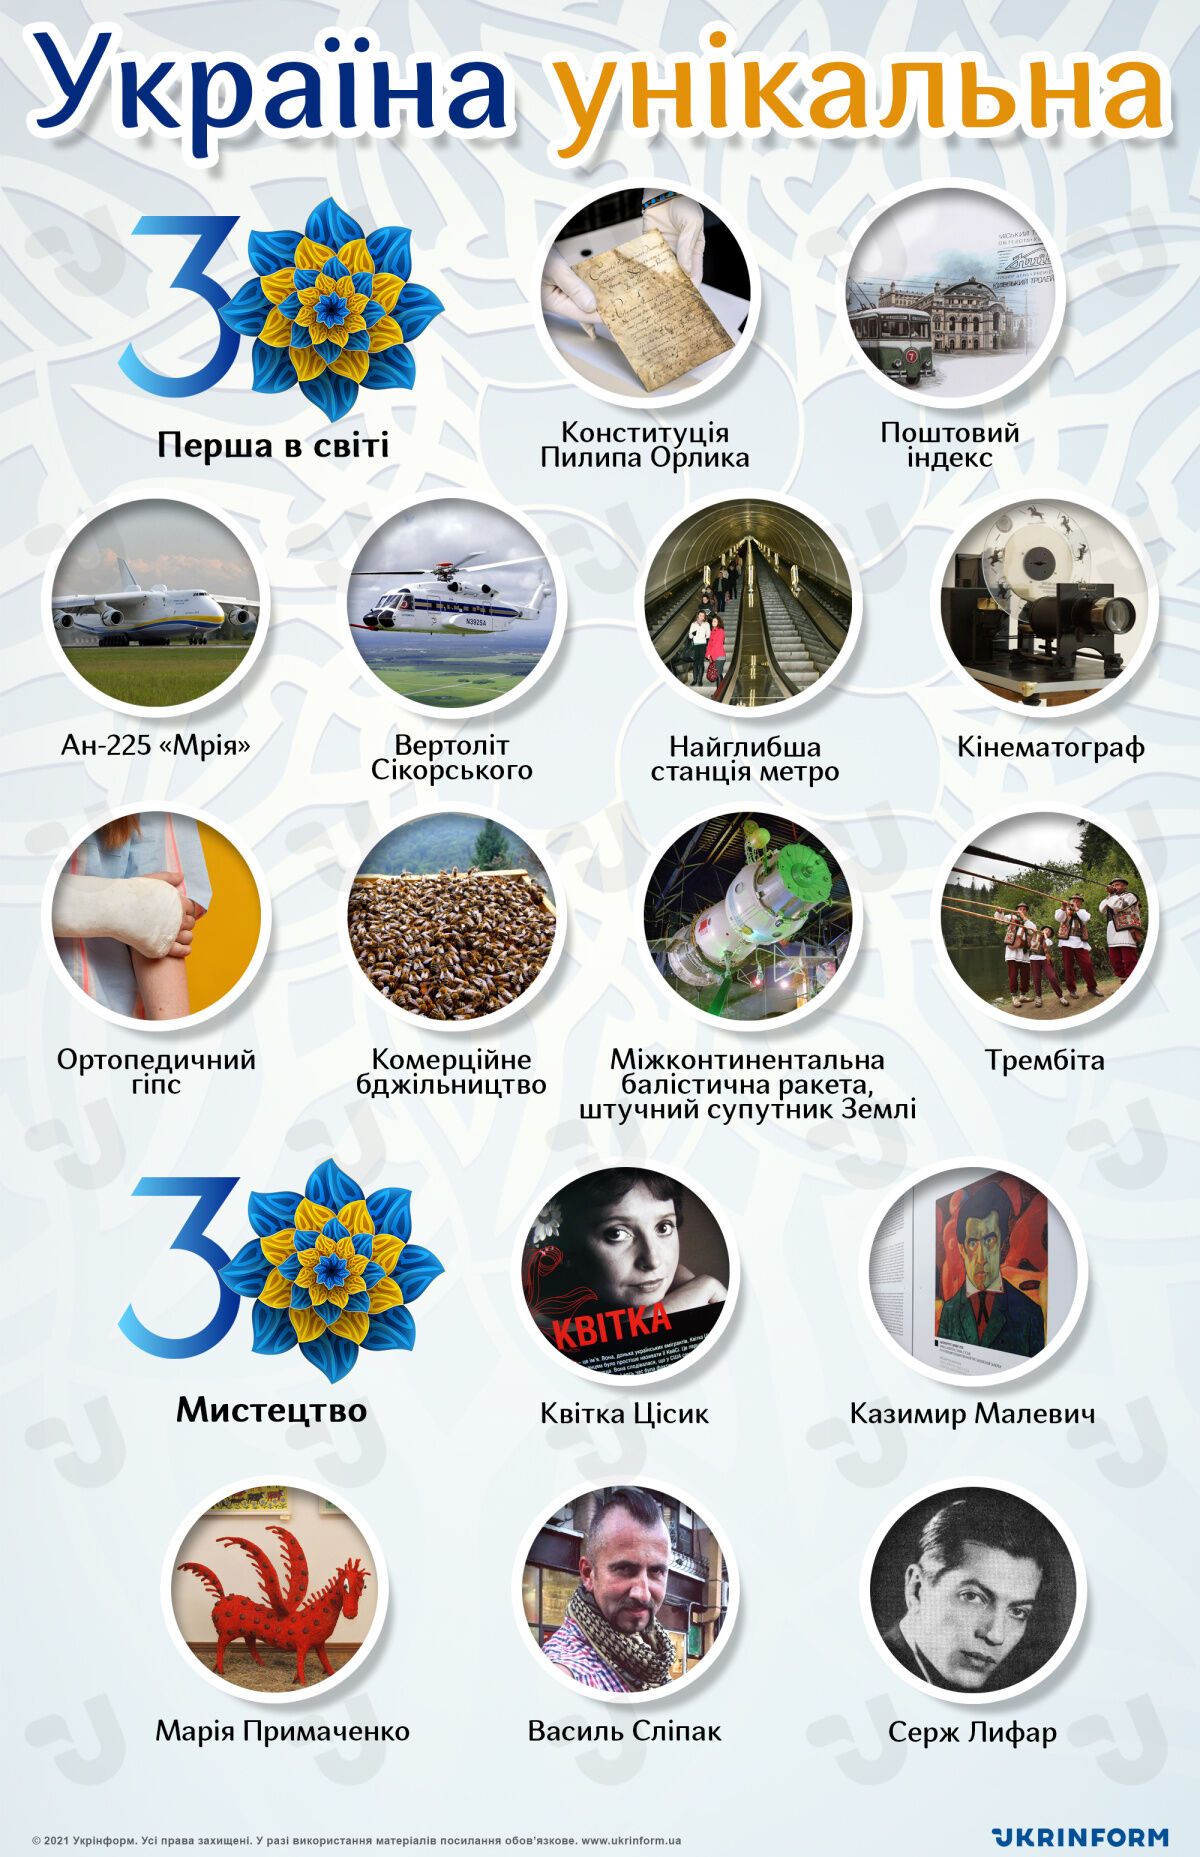 Украина уникальная, независимости - 30 лет